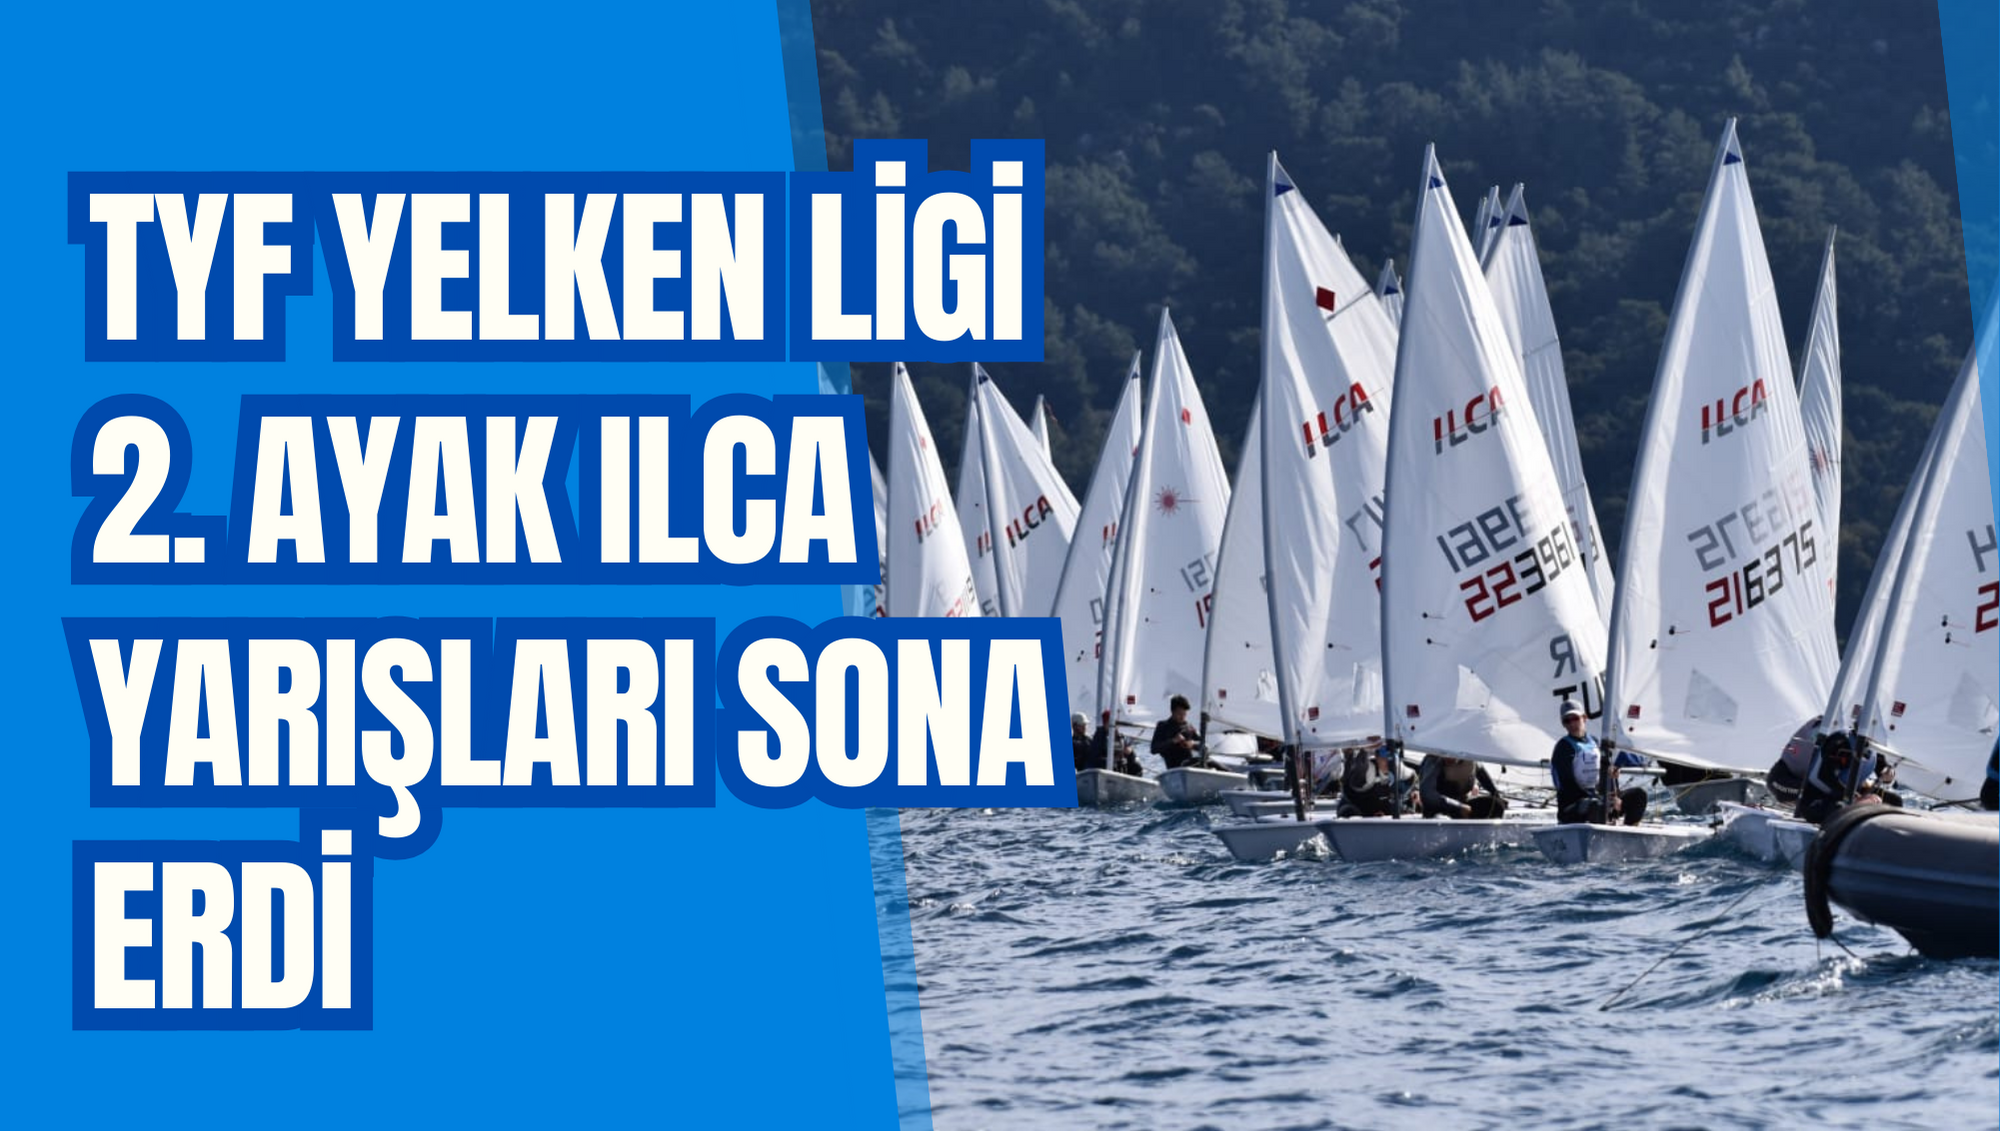 TYF Yelken Ligi 2. Ayak ILCA yarışları sona erdi